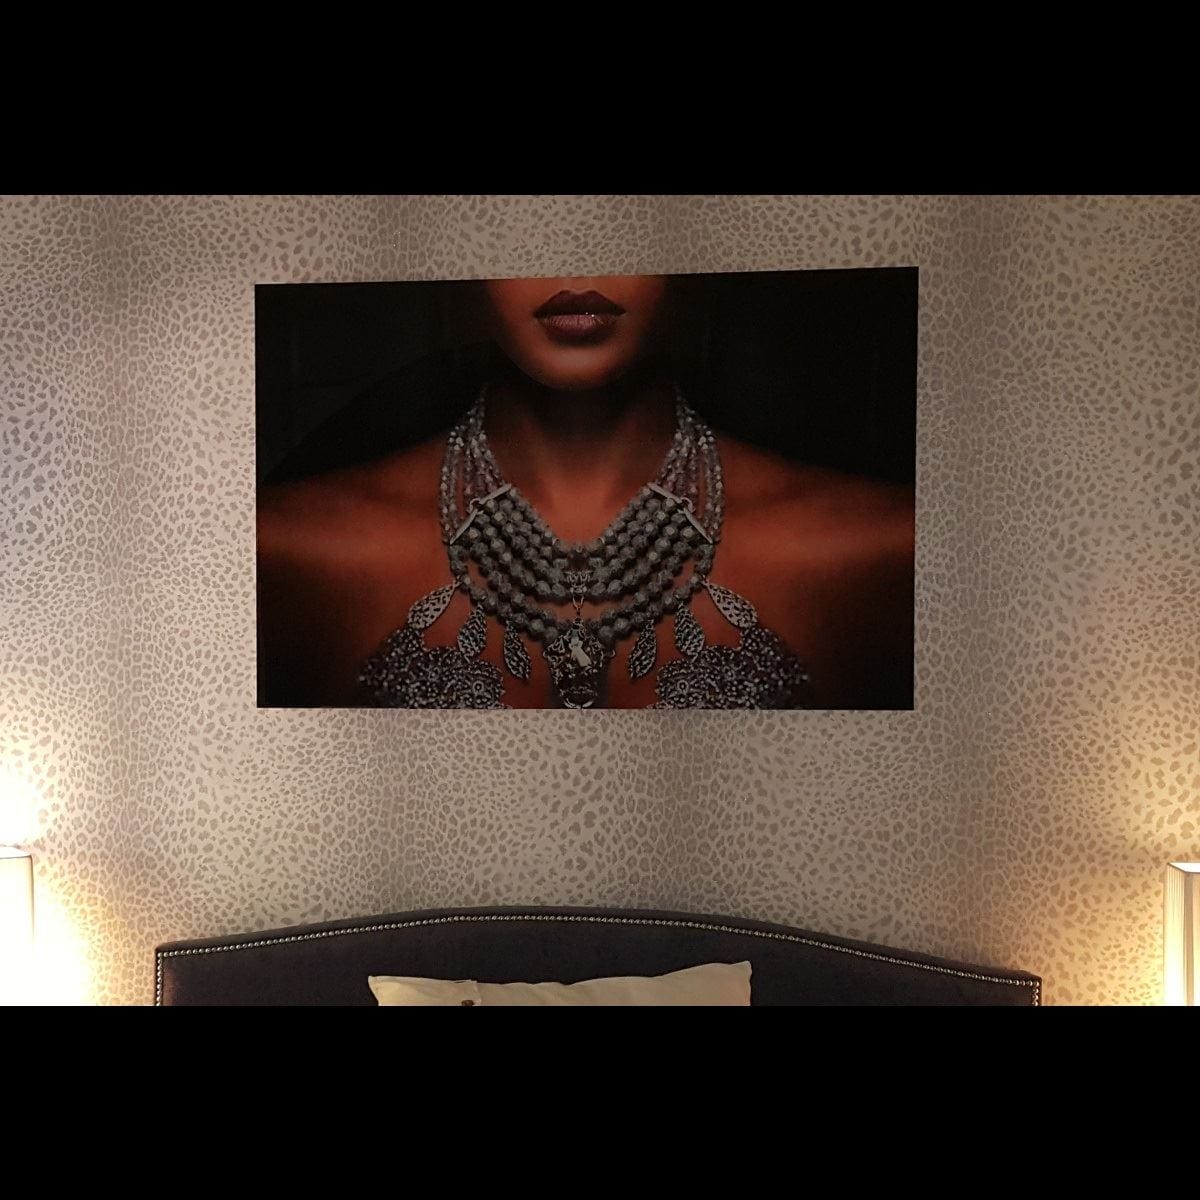 Quatropi Stunning Large photographic Art On Acrylic. Lady With Necklace 7204